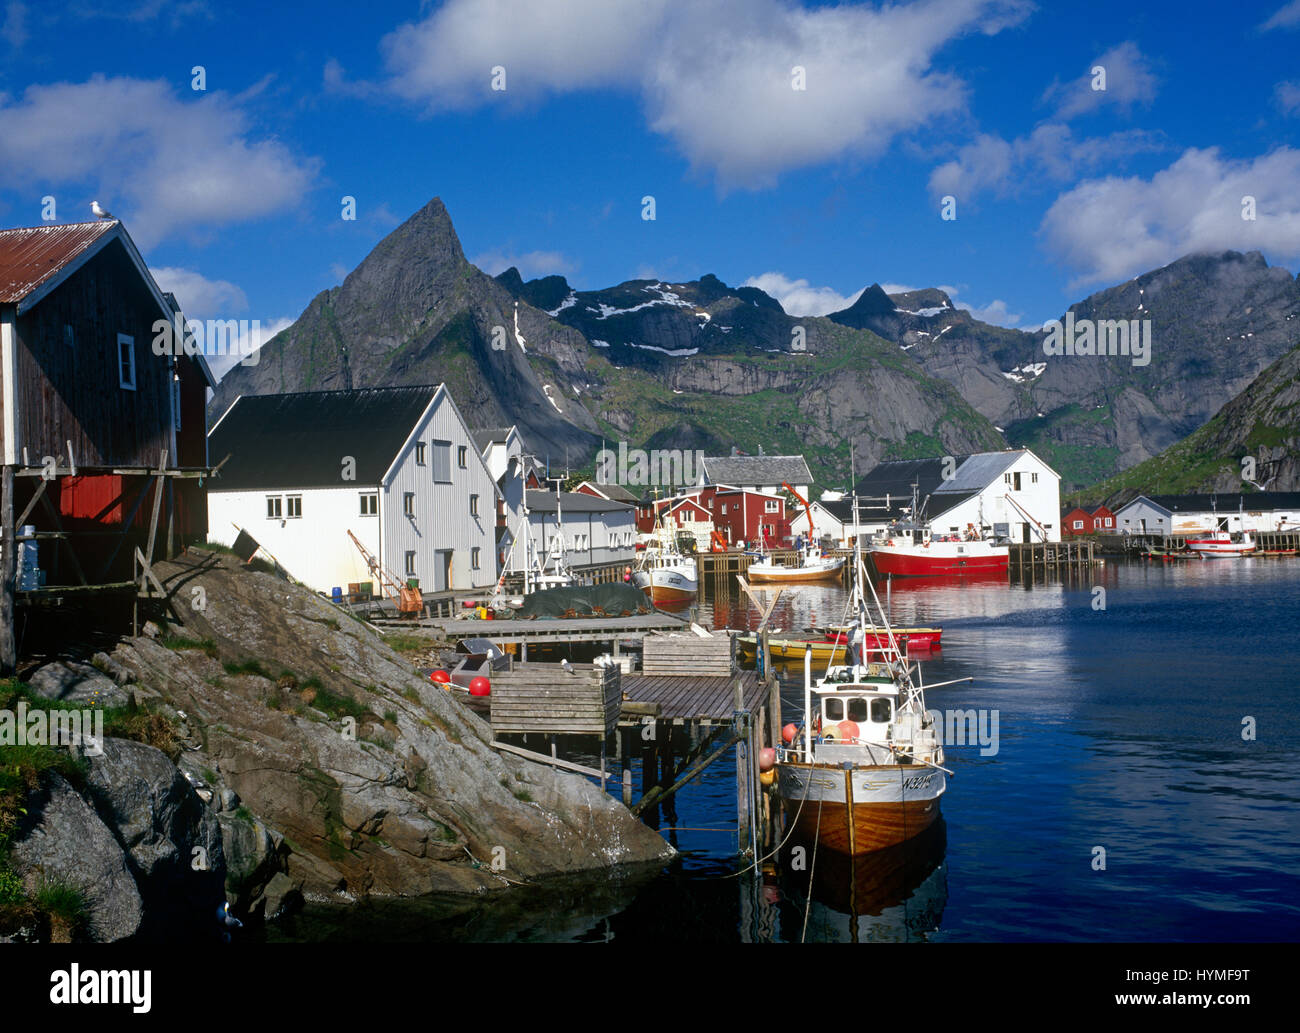 Reine e villaggio di pescatori, Hamnoy, Moskenes, Isole Lofoten in Norvegia Foto Stock